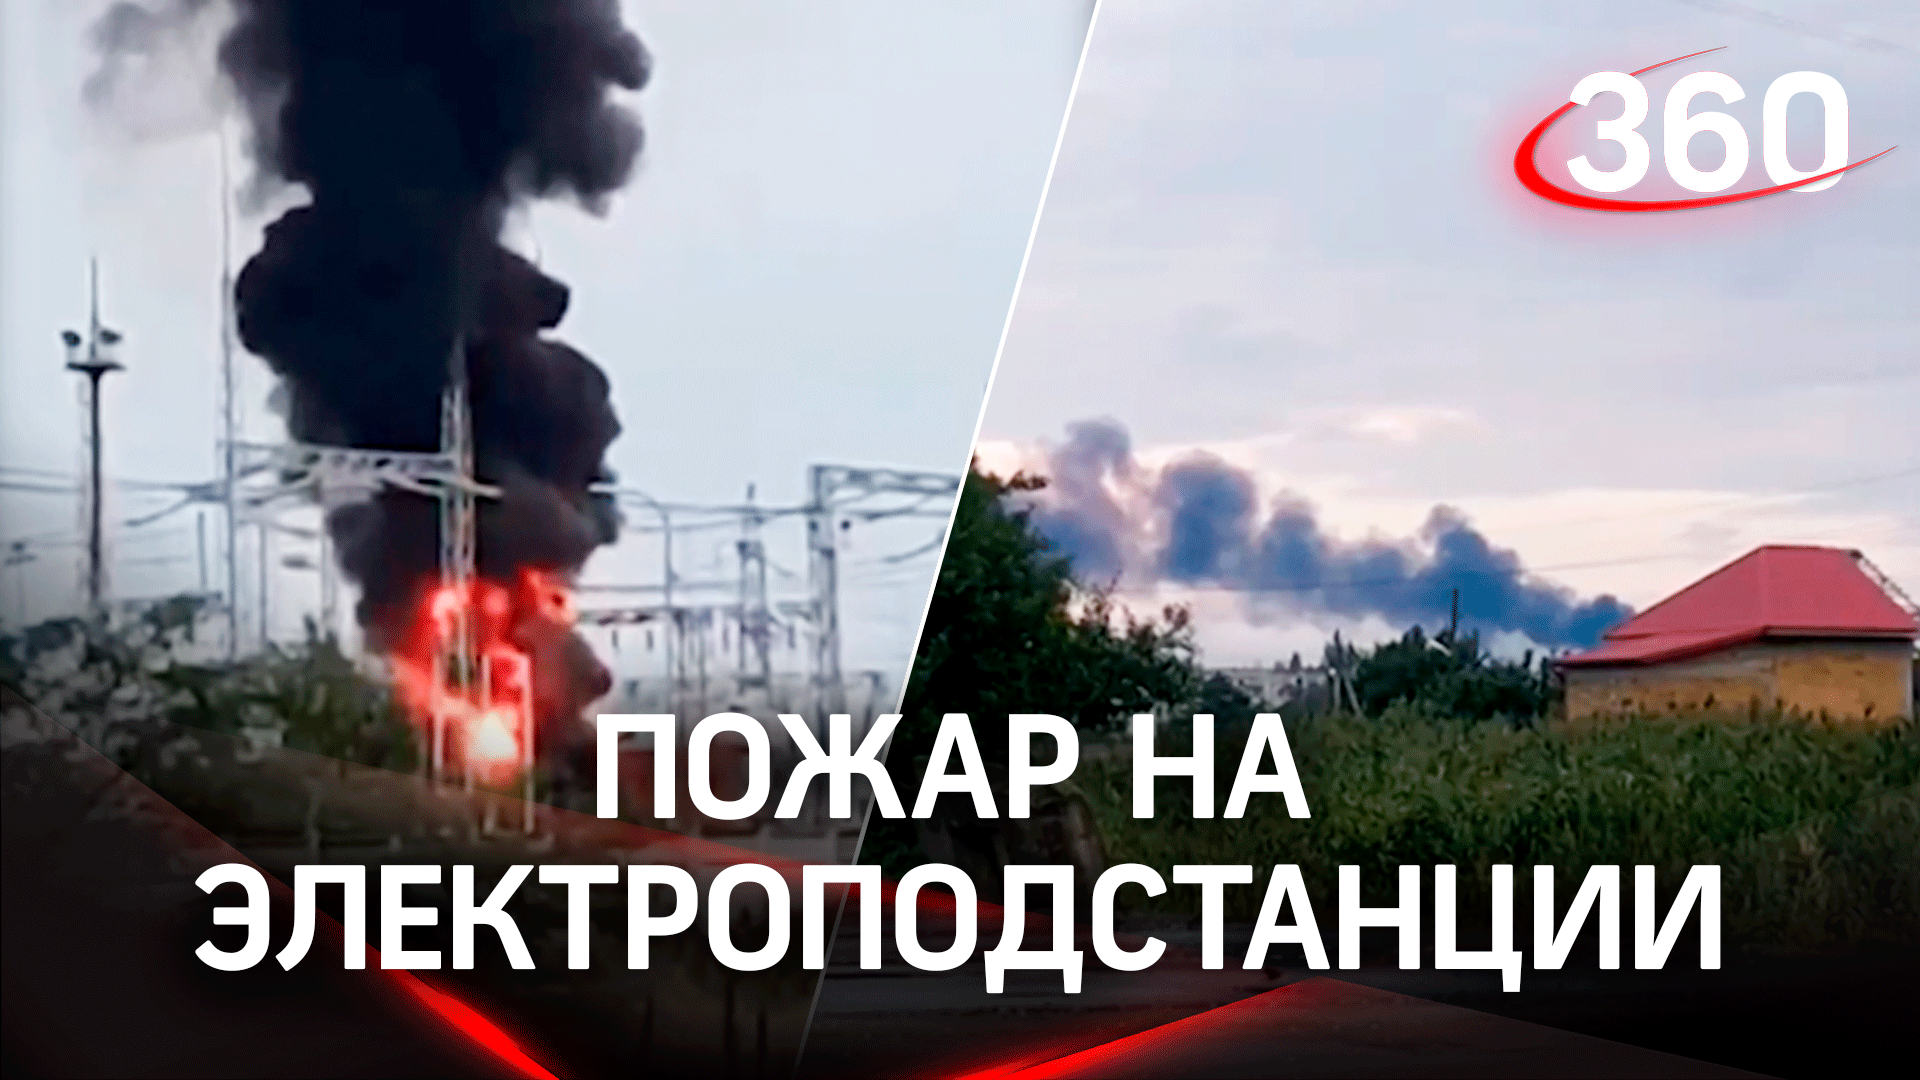 Мощный взрыв в Крыму: пожар на электроподстанции или диверсия на складе боеприпасов?